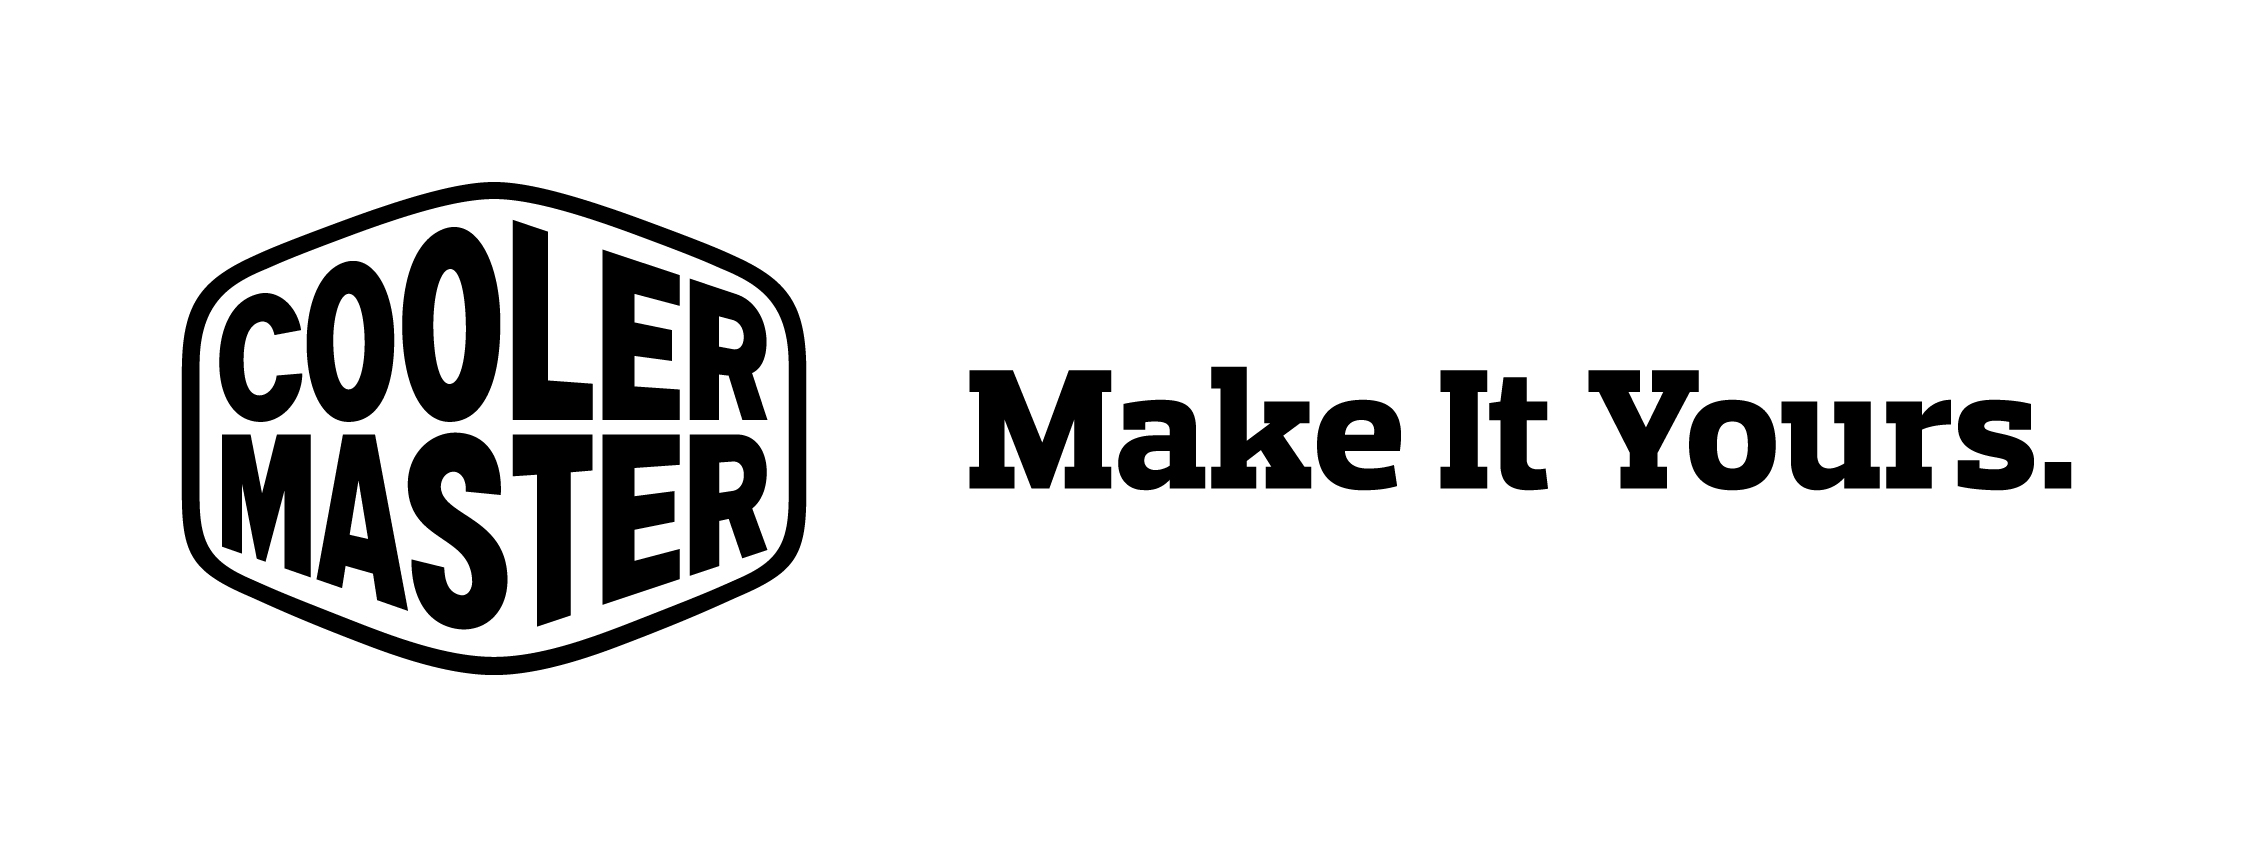 Logo-Cooler Master Make It Yours